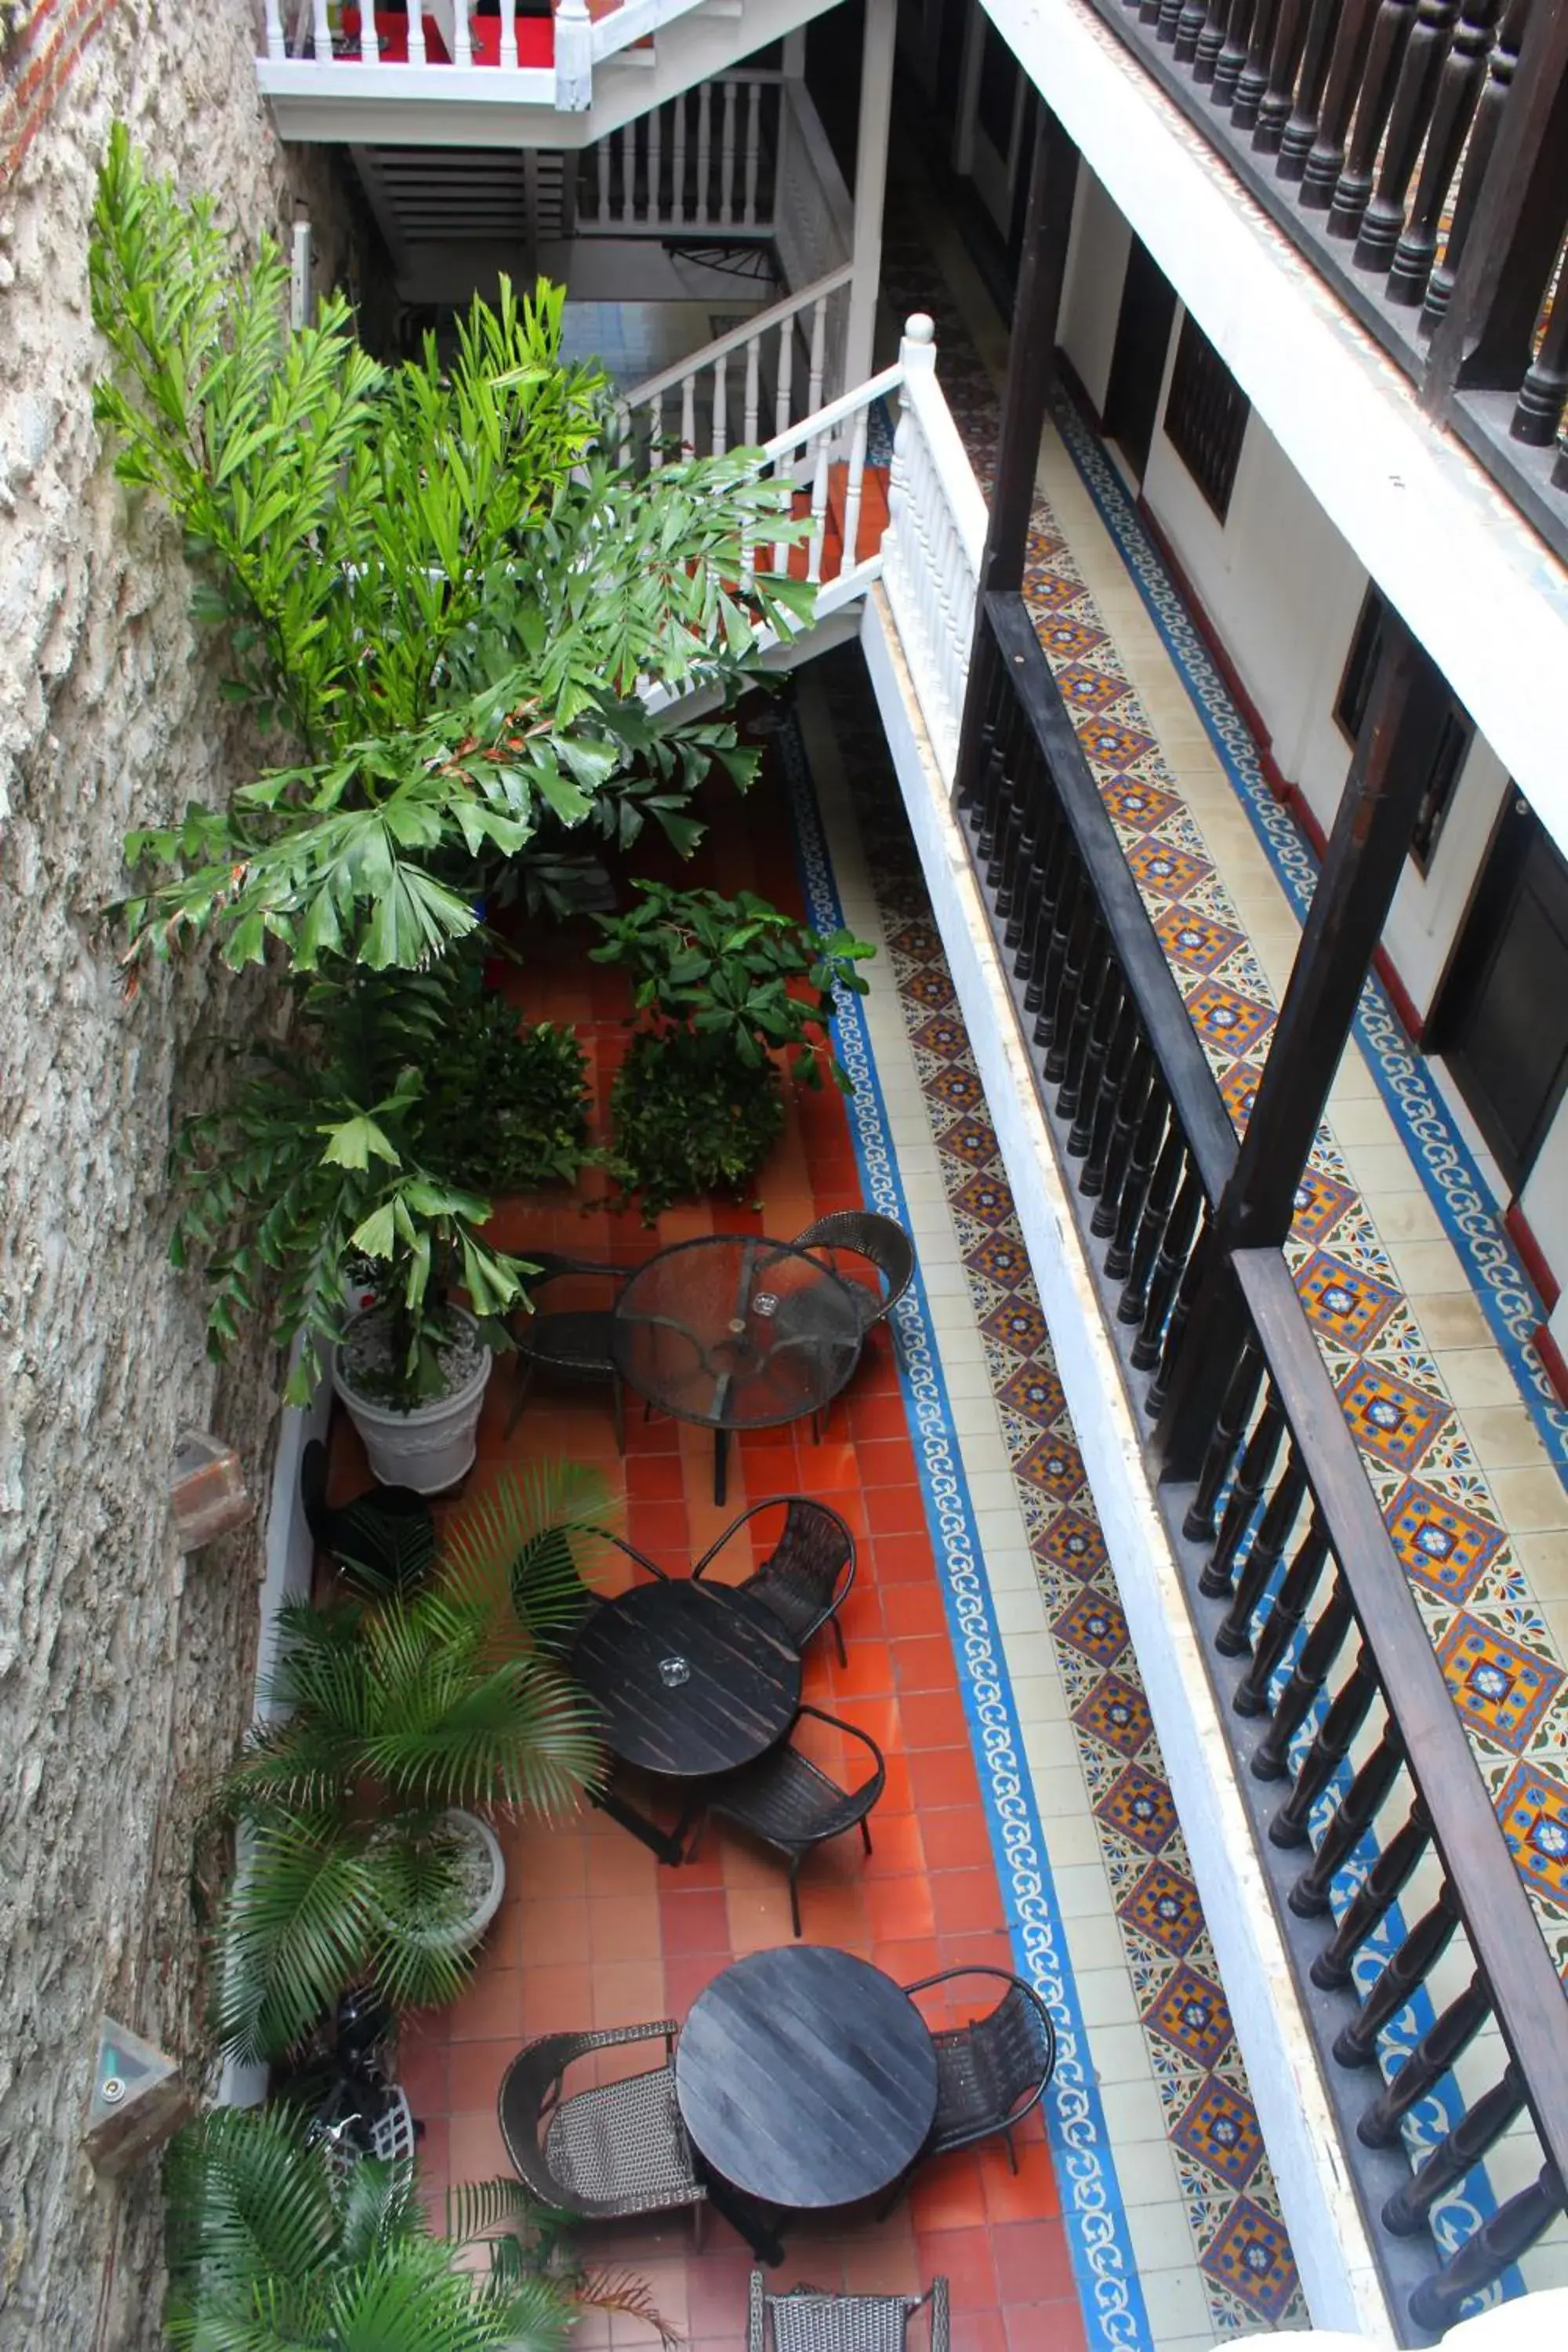 Decorative detail, Patio/Outdoor Area in Hotel Villa Colonial